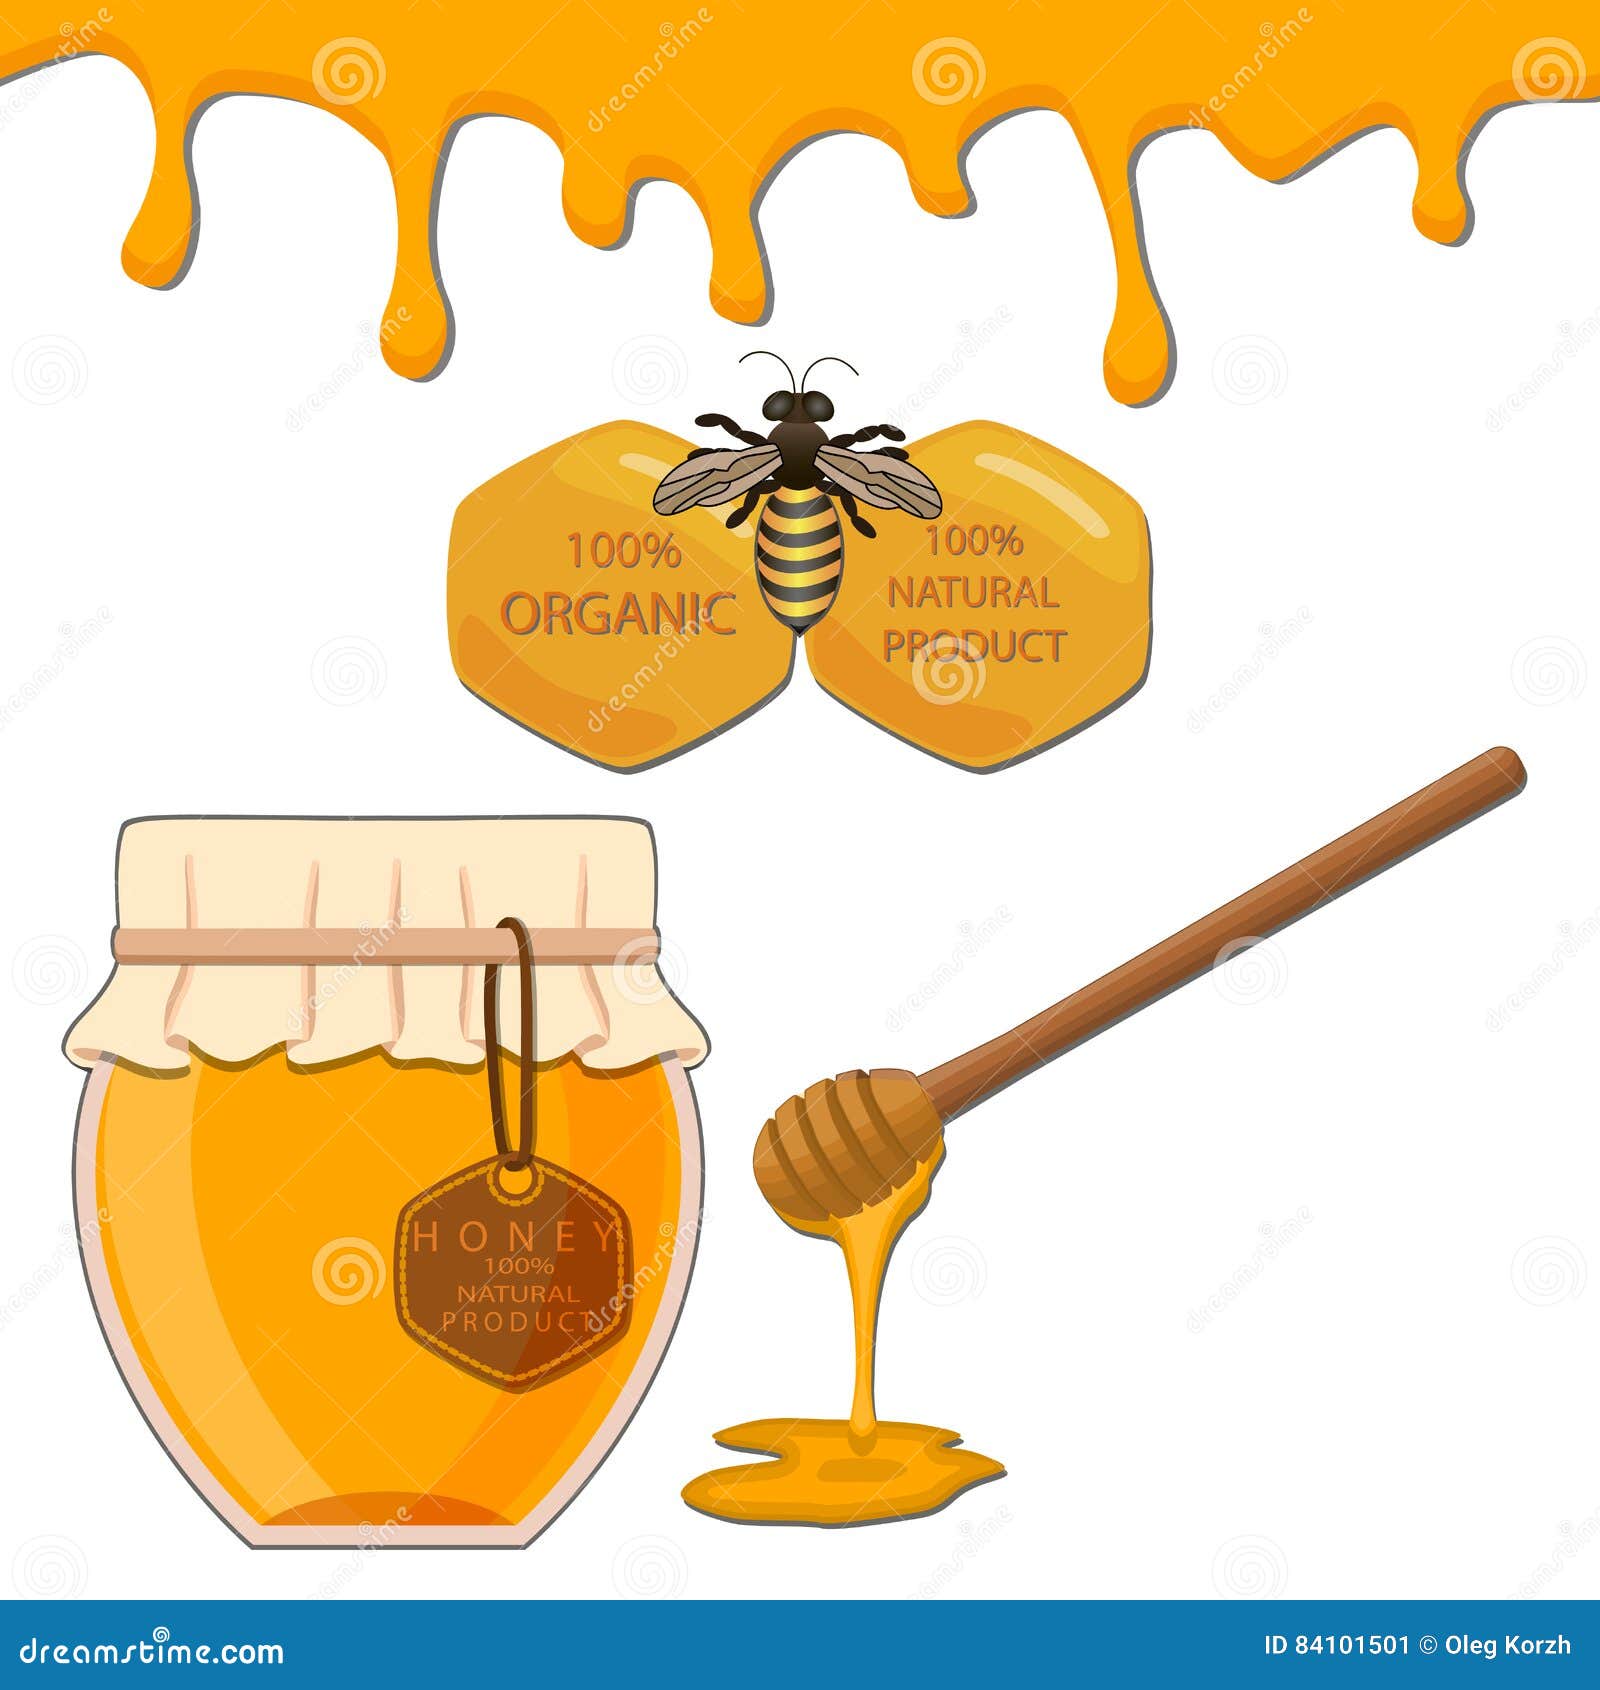 La alimentación de las abejas: ¿qué papel juegan las proteínas?